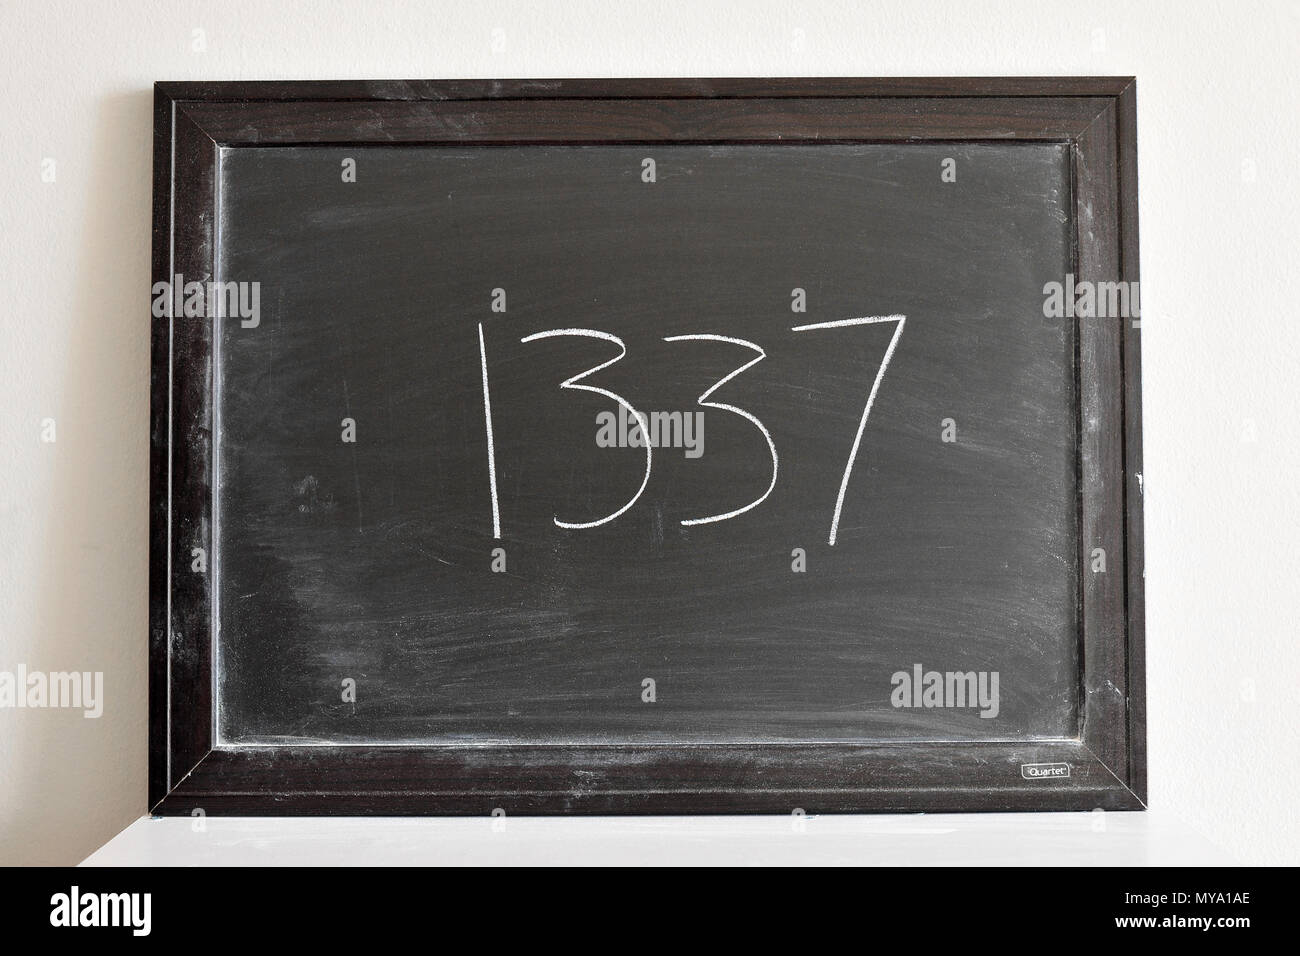 1337 written in white chalk on a blackboard Stock Photo